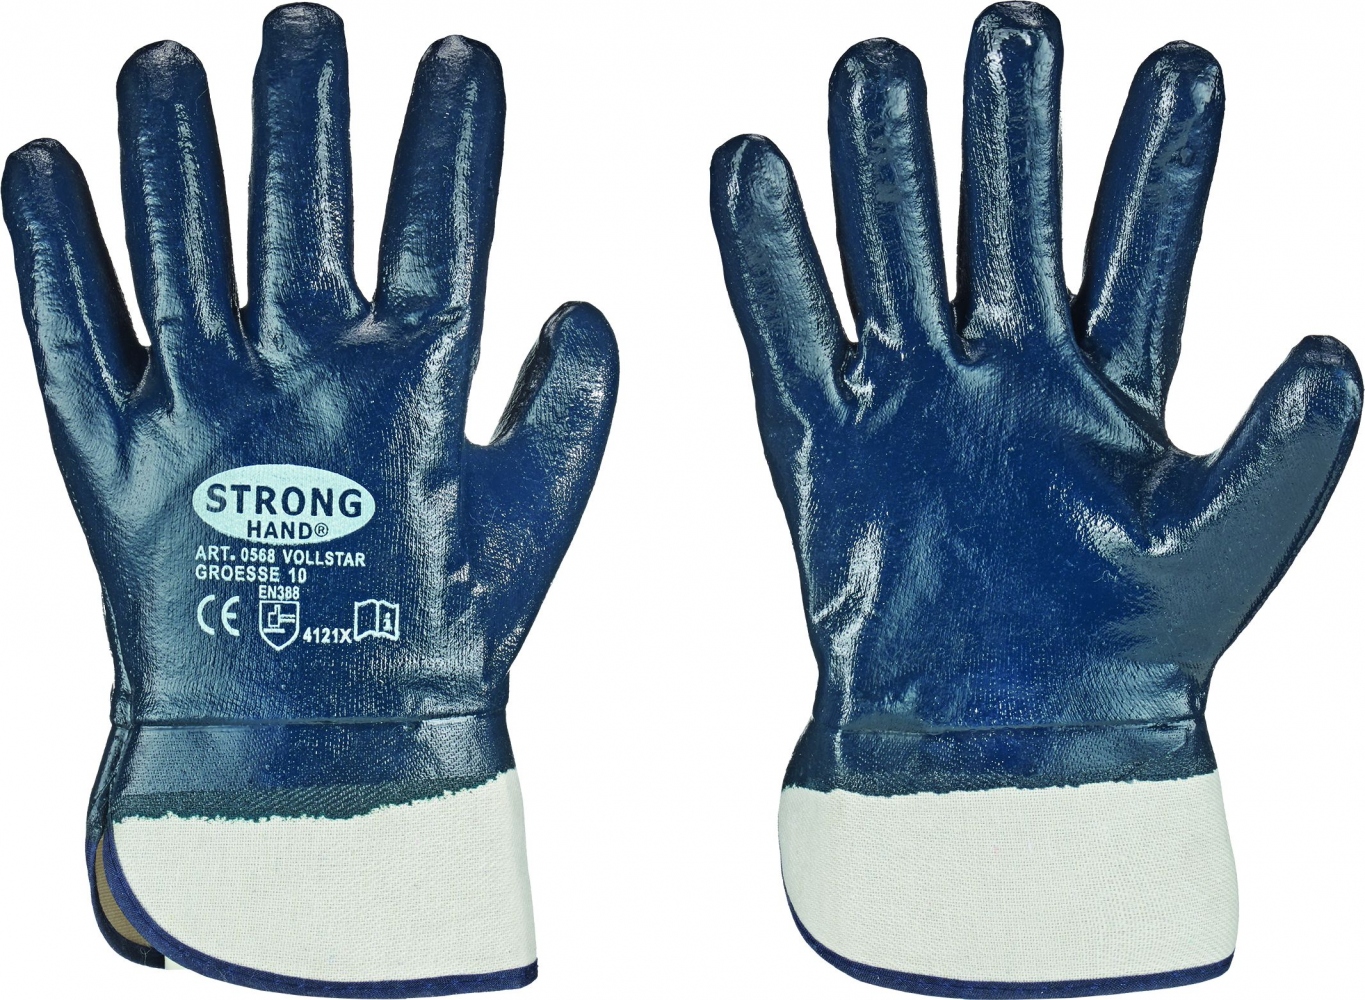 Stronghand 0568 VOLLSTAR Nitril-Handschuhe fett- und ölabweisend 10-11  online kaufen